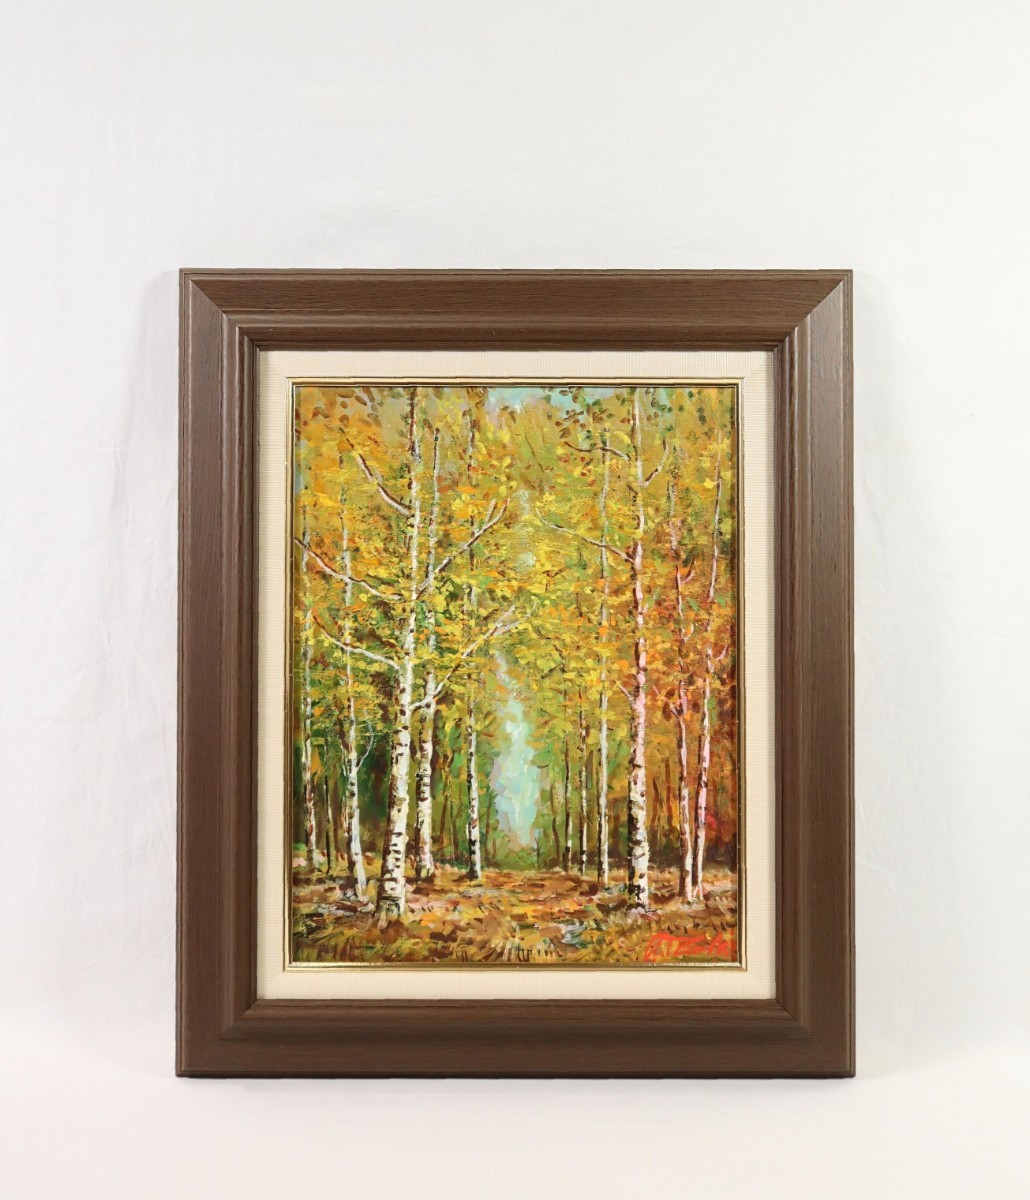 वास्तविक कार्य मासुयुकी ताकाहाशी तेल चित्रकला सफेद बिर्च वन आकार एफ 6 होक्काइडो में जन्मे जेन्योकाई के सदस्य उनके जीवन का हिस्सा स्थानीय क्षेत्र में निहित है रंगीन शरद ऋतु के पत्तों के सुंदर दृश्य के साथ सफेद बर्च जंगल में एक पथ के साथ वन परिदृश्य 7632, चित्रकारी, तैल चित्र, प्रकृति, परिदृश्य चित्रकला